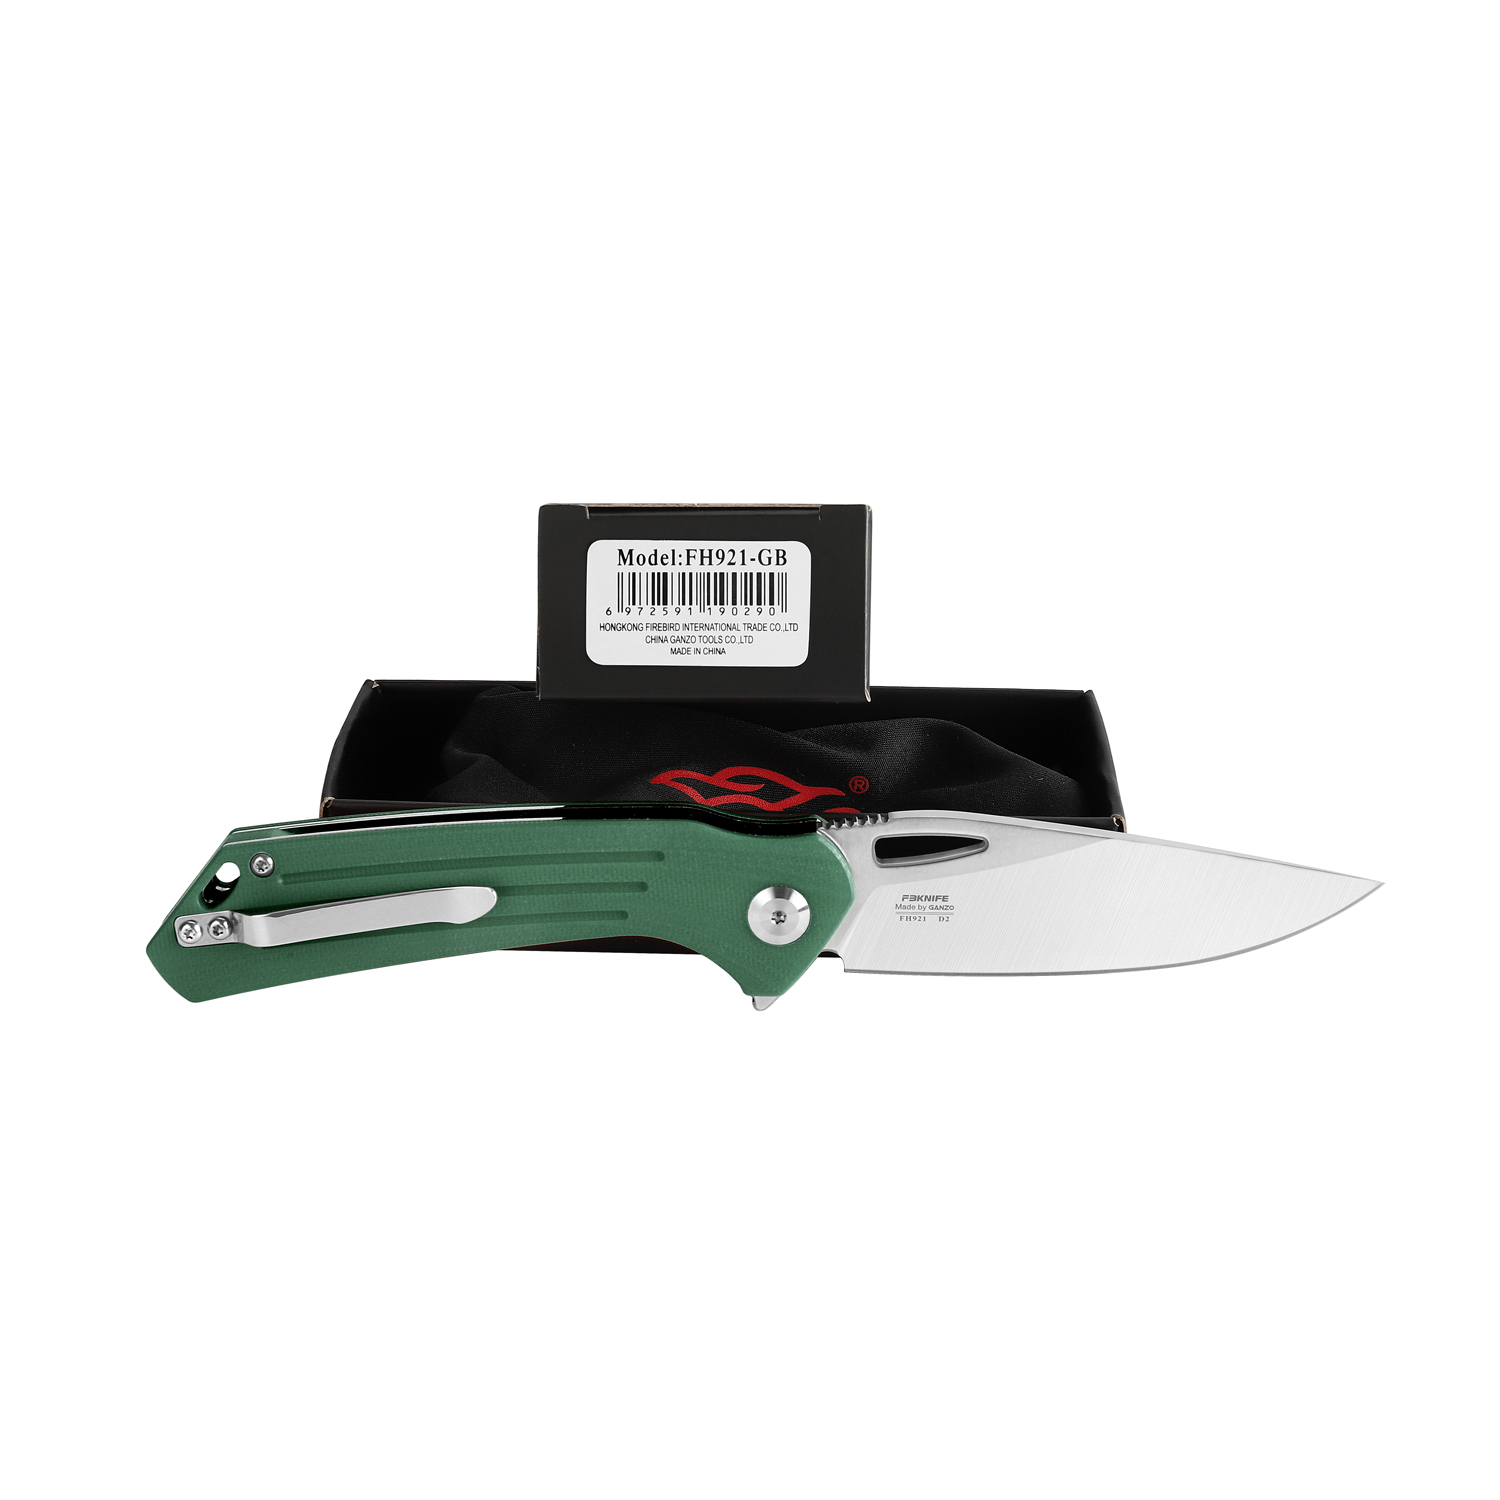 Складной нож Firebird FH921-GB, сталь D2, рукоять G10 зеленая - фото 7